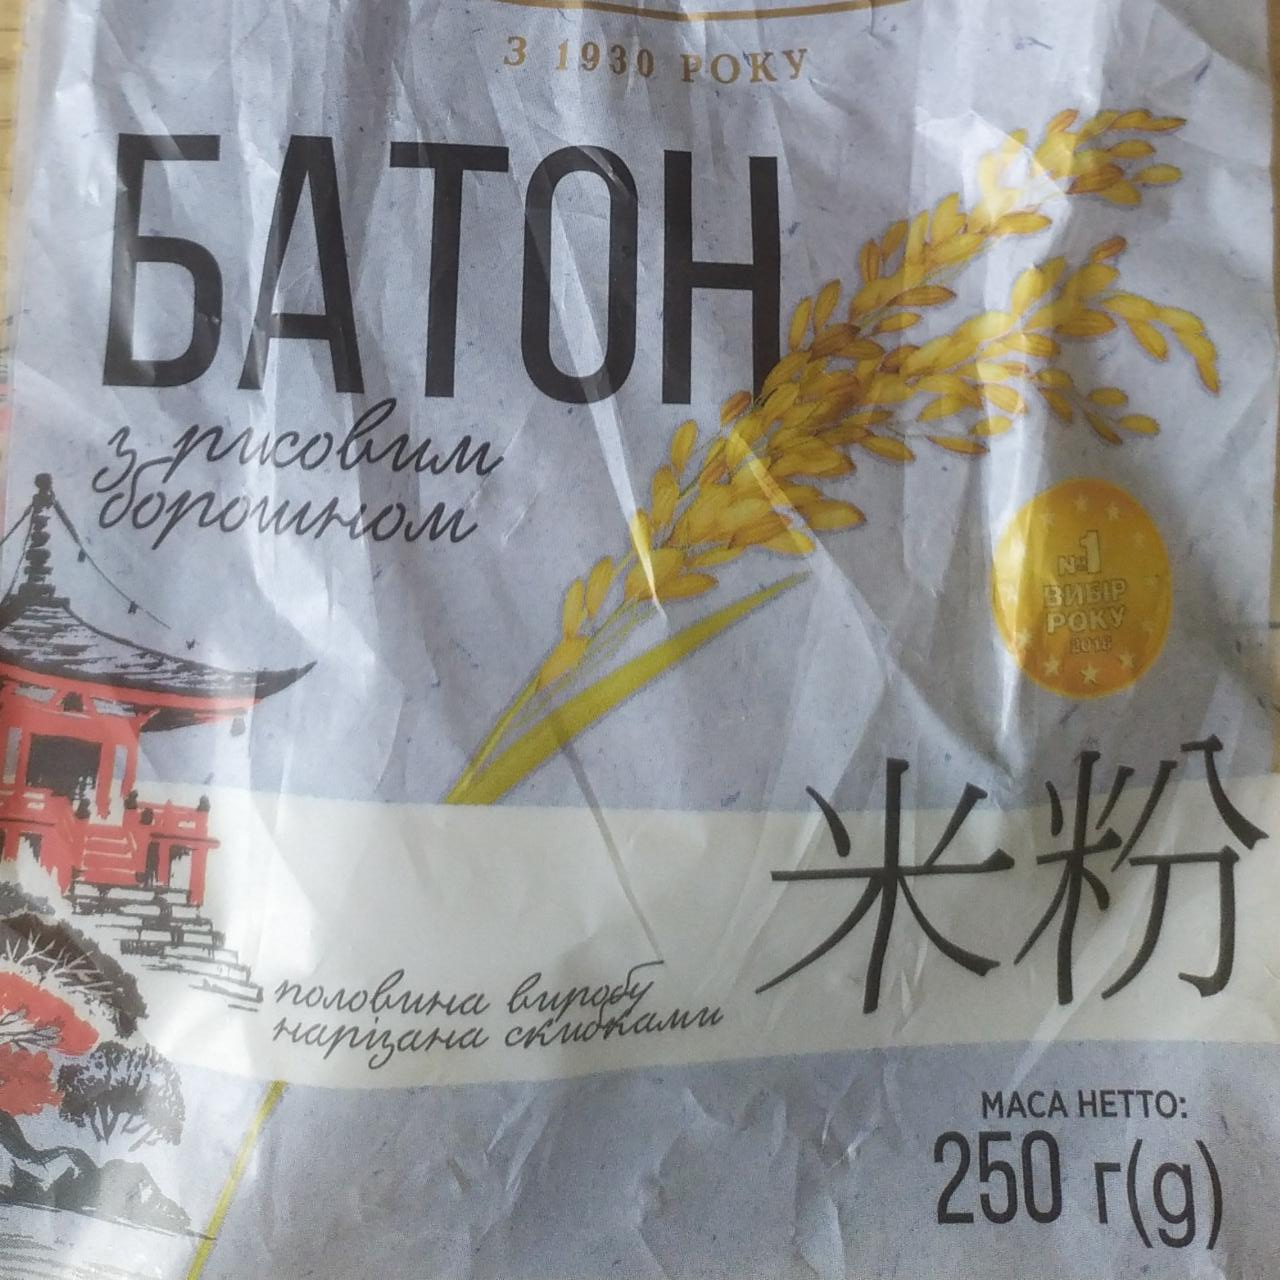 Фото - Батон половинка в нарезке с рисовой мукой Київхліб